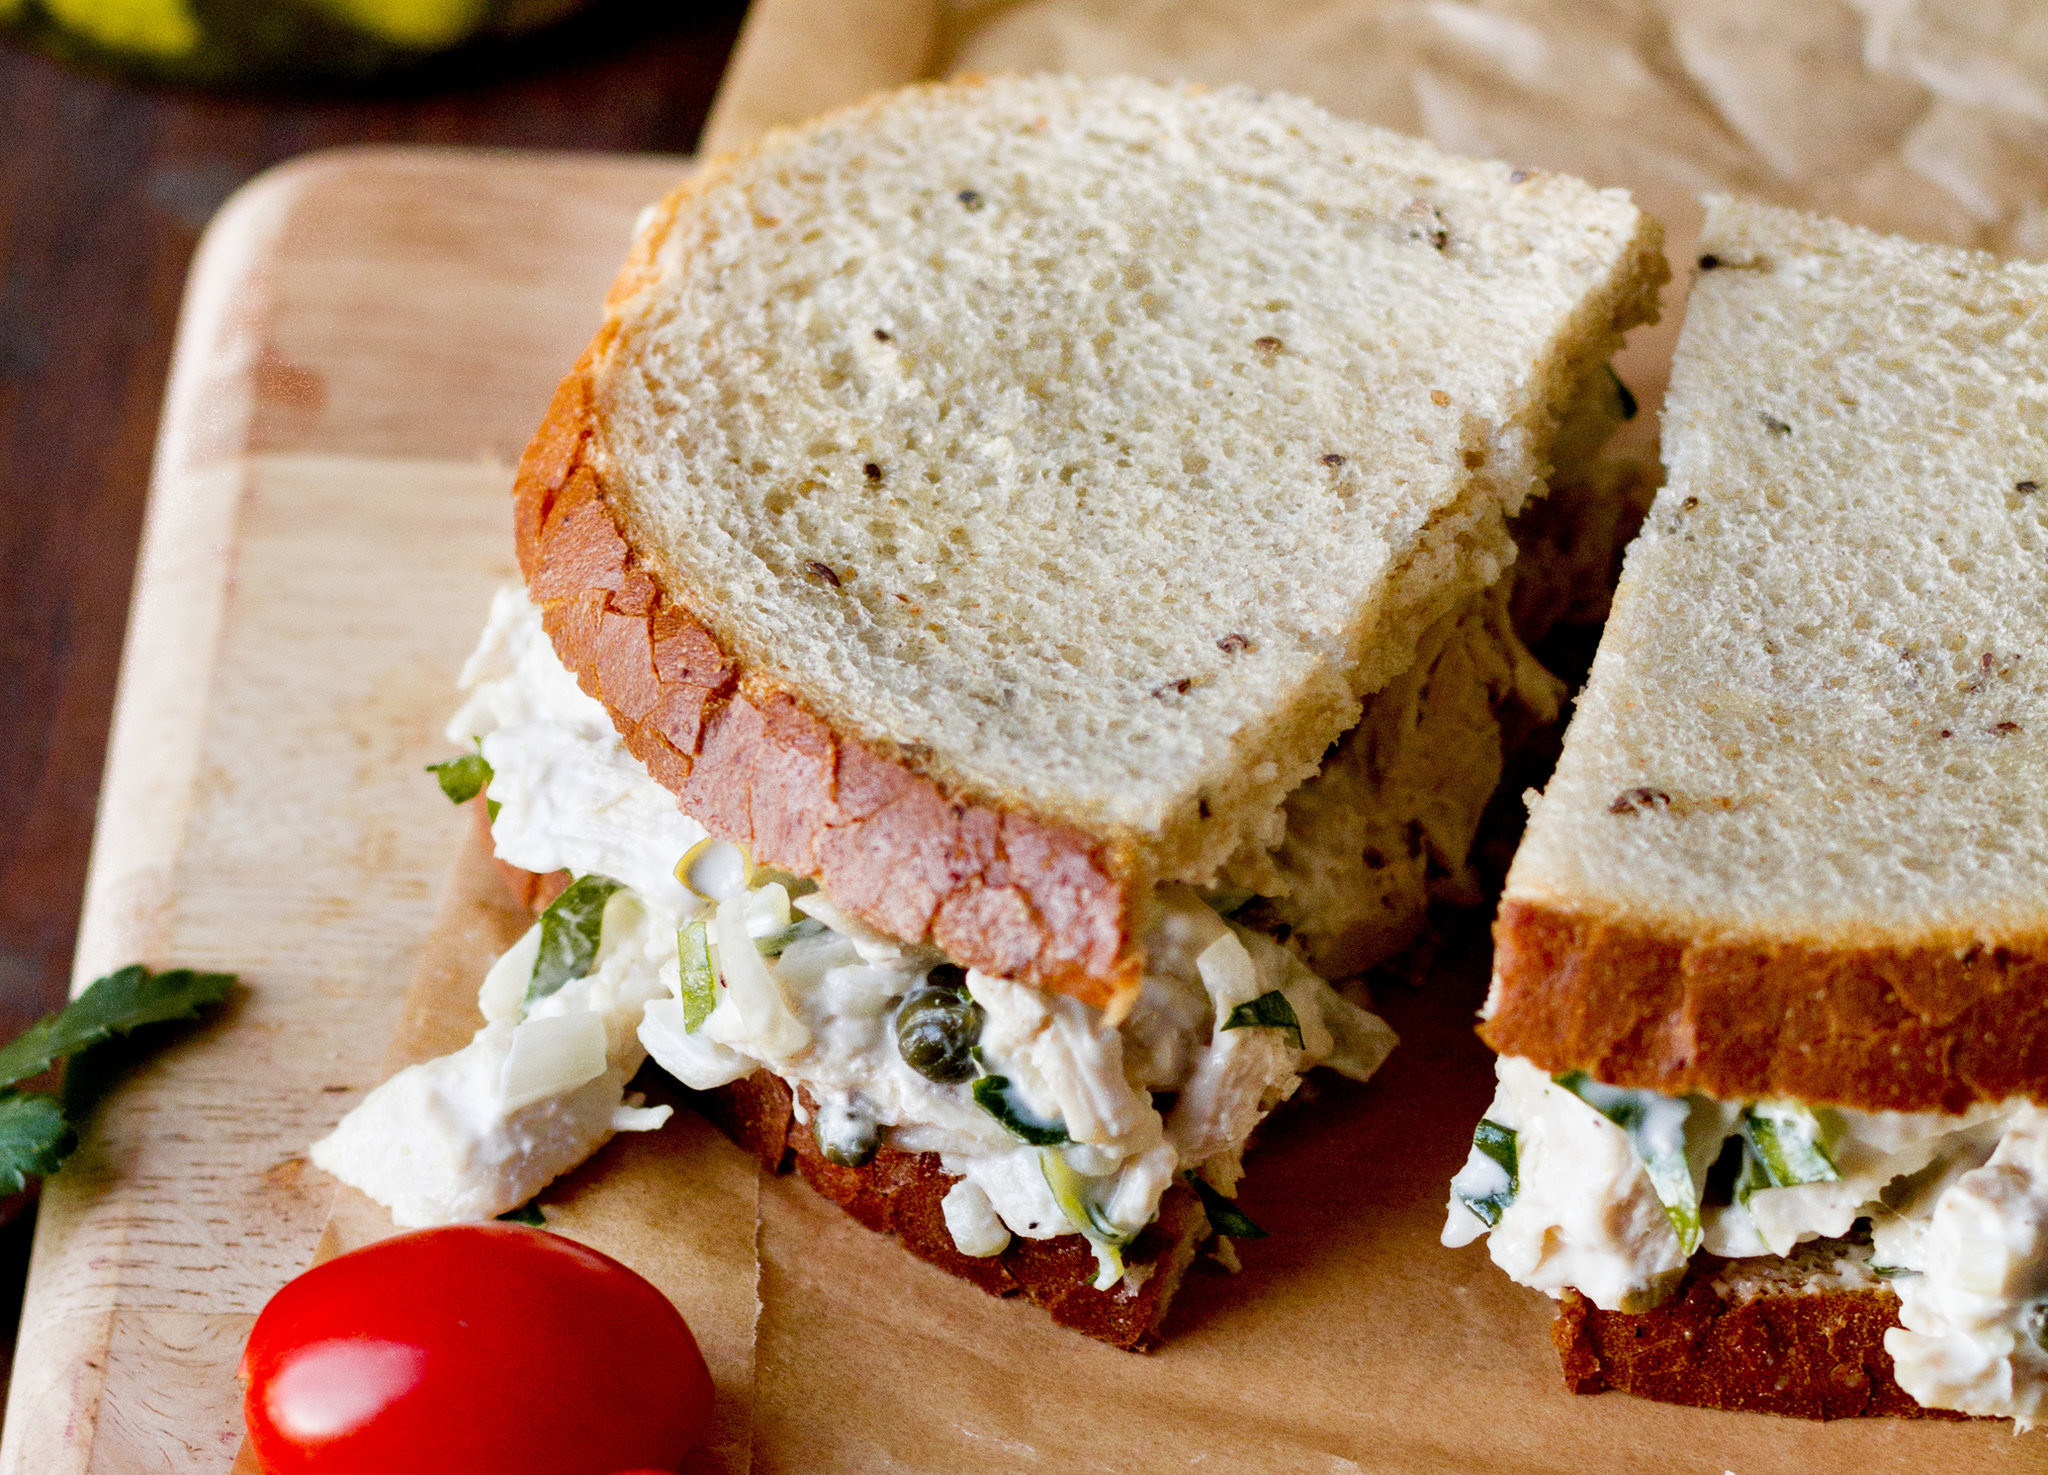 Chicken Salad Sandwiches Recipe
 Craig Claiborne’s Chicken Salad Sandwich Recipe NYT Cooking